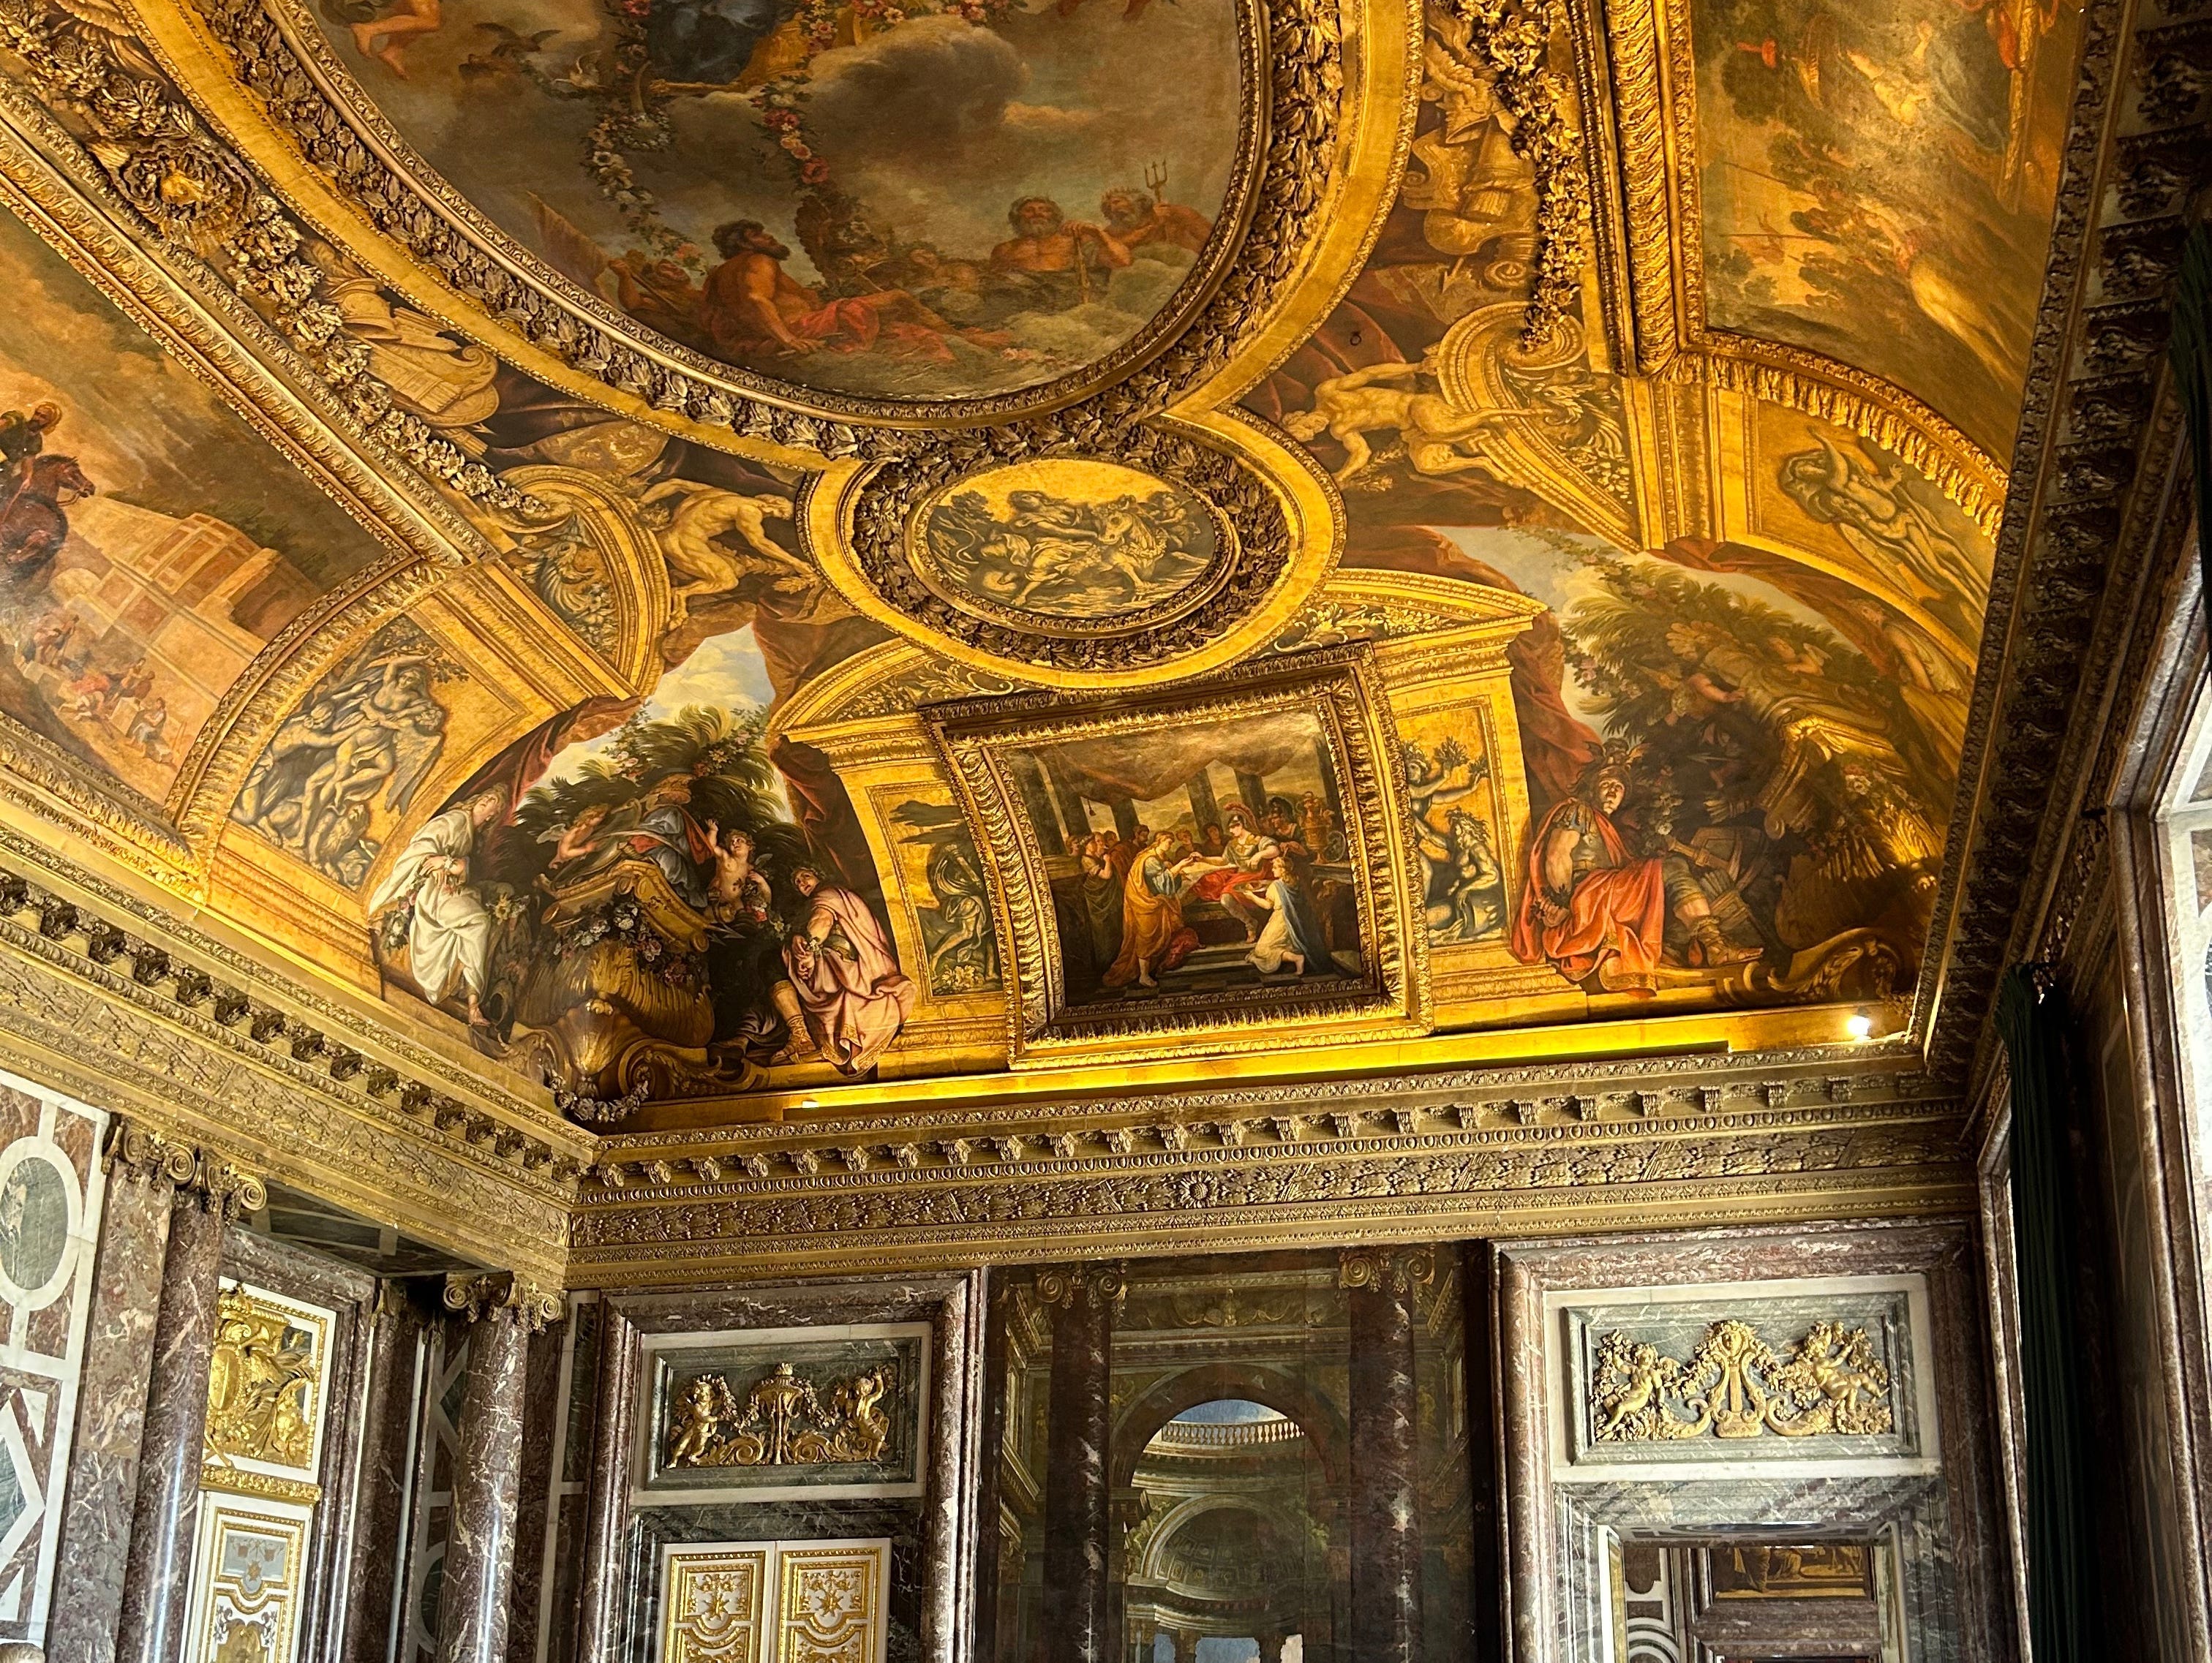 Ein weiterer belebter Raum im Schloss von Versailles.